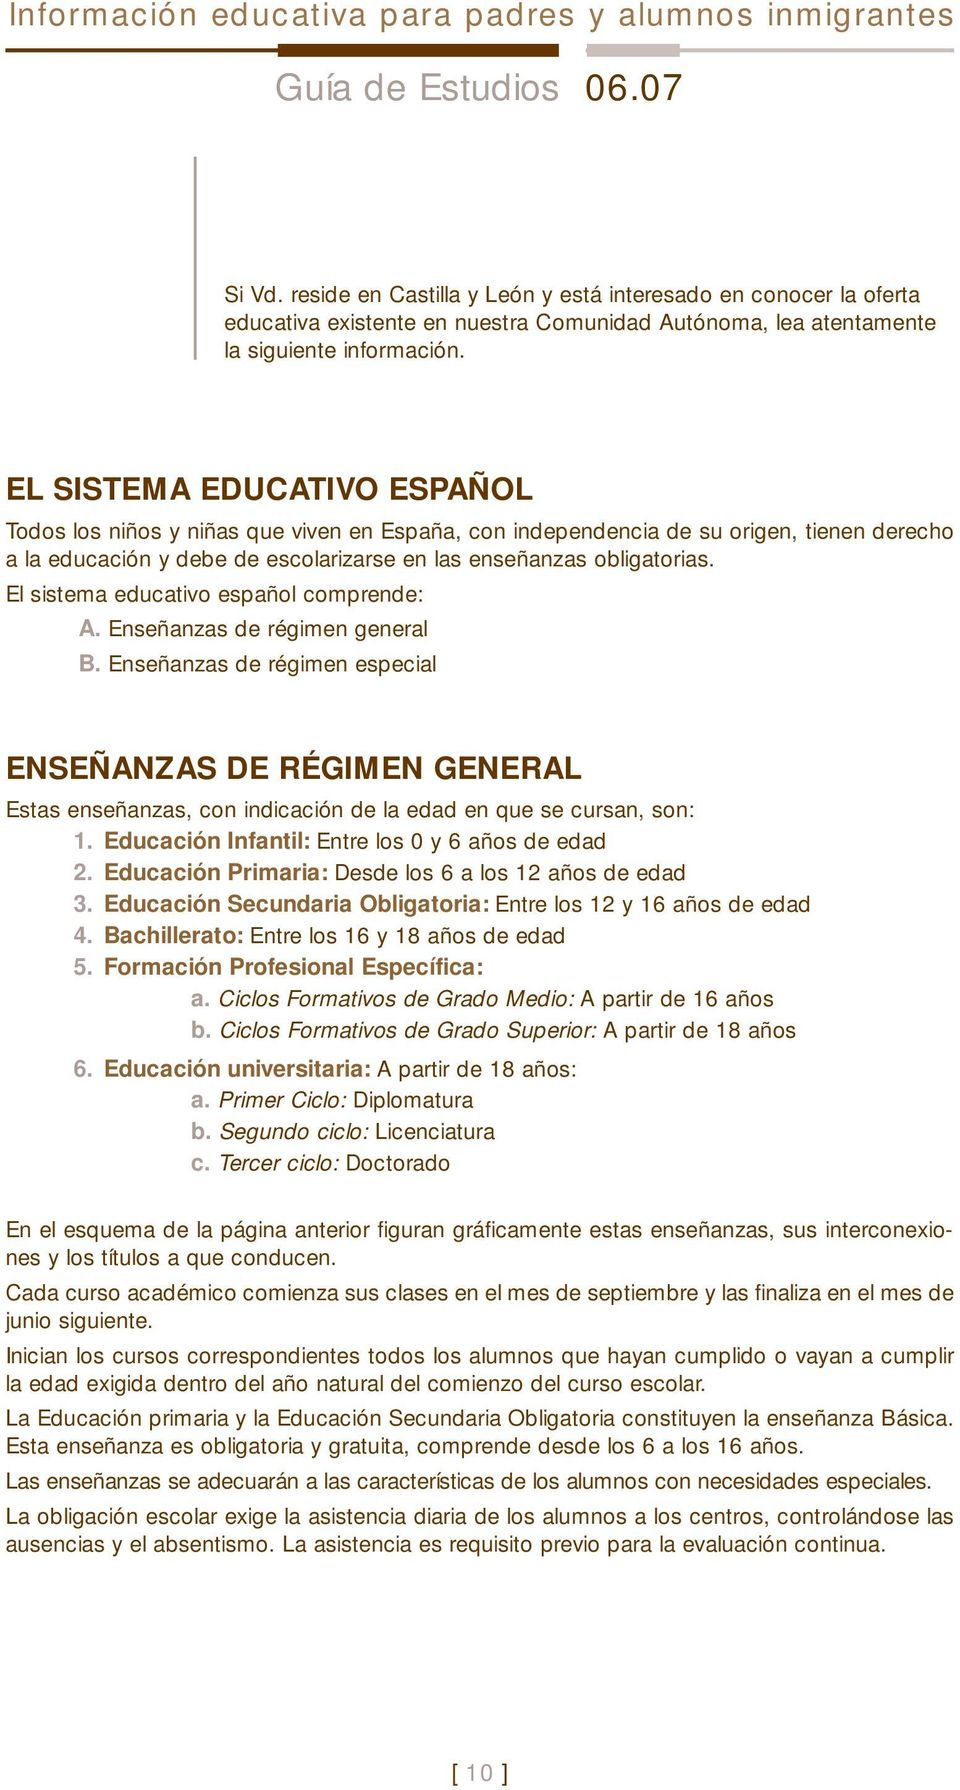 EL SISTEMA EDUCATIVO ESPAÑOL Todos los niños y niñas que viven en España, con independencia de su origen, tienen derecho a la educación y debe de escolarizarse en las enseñanzas obligatorias.